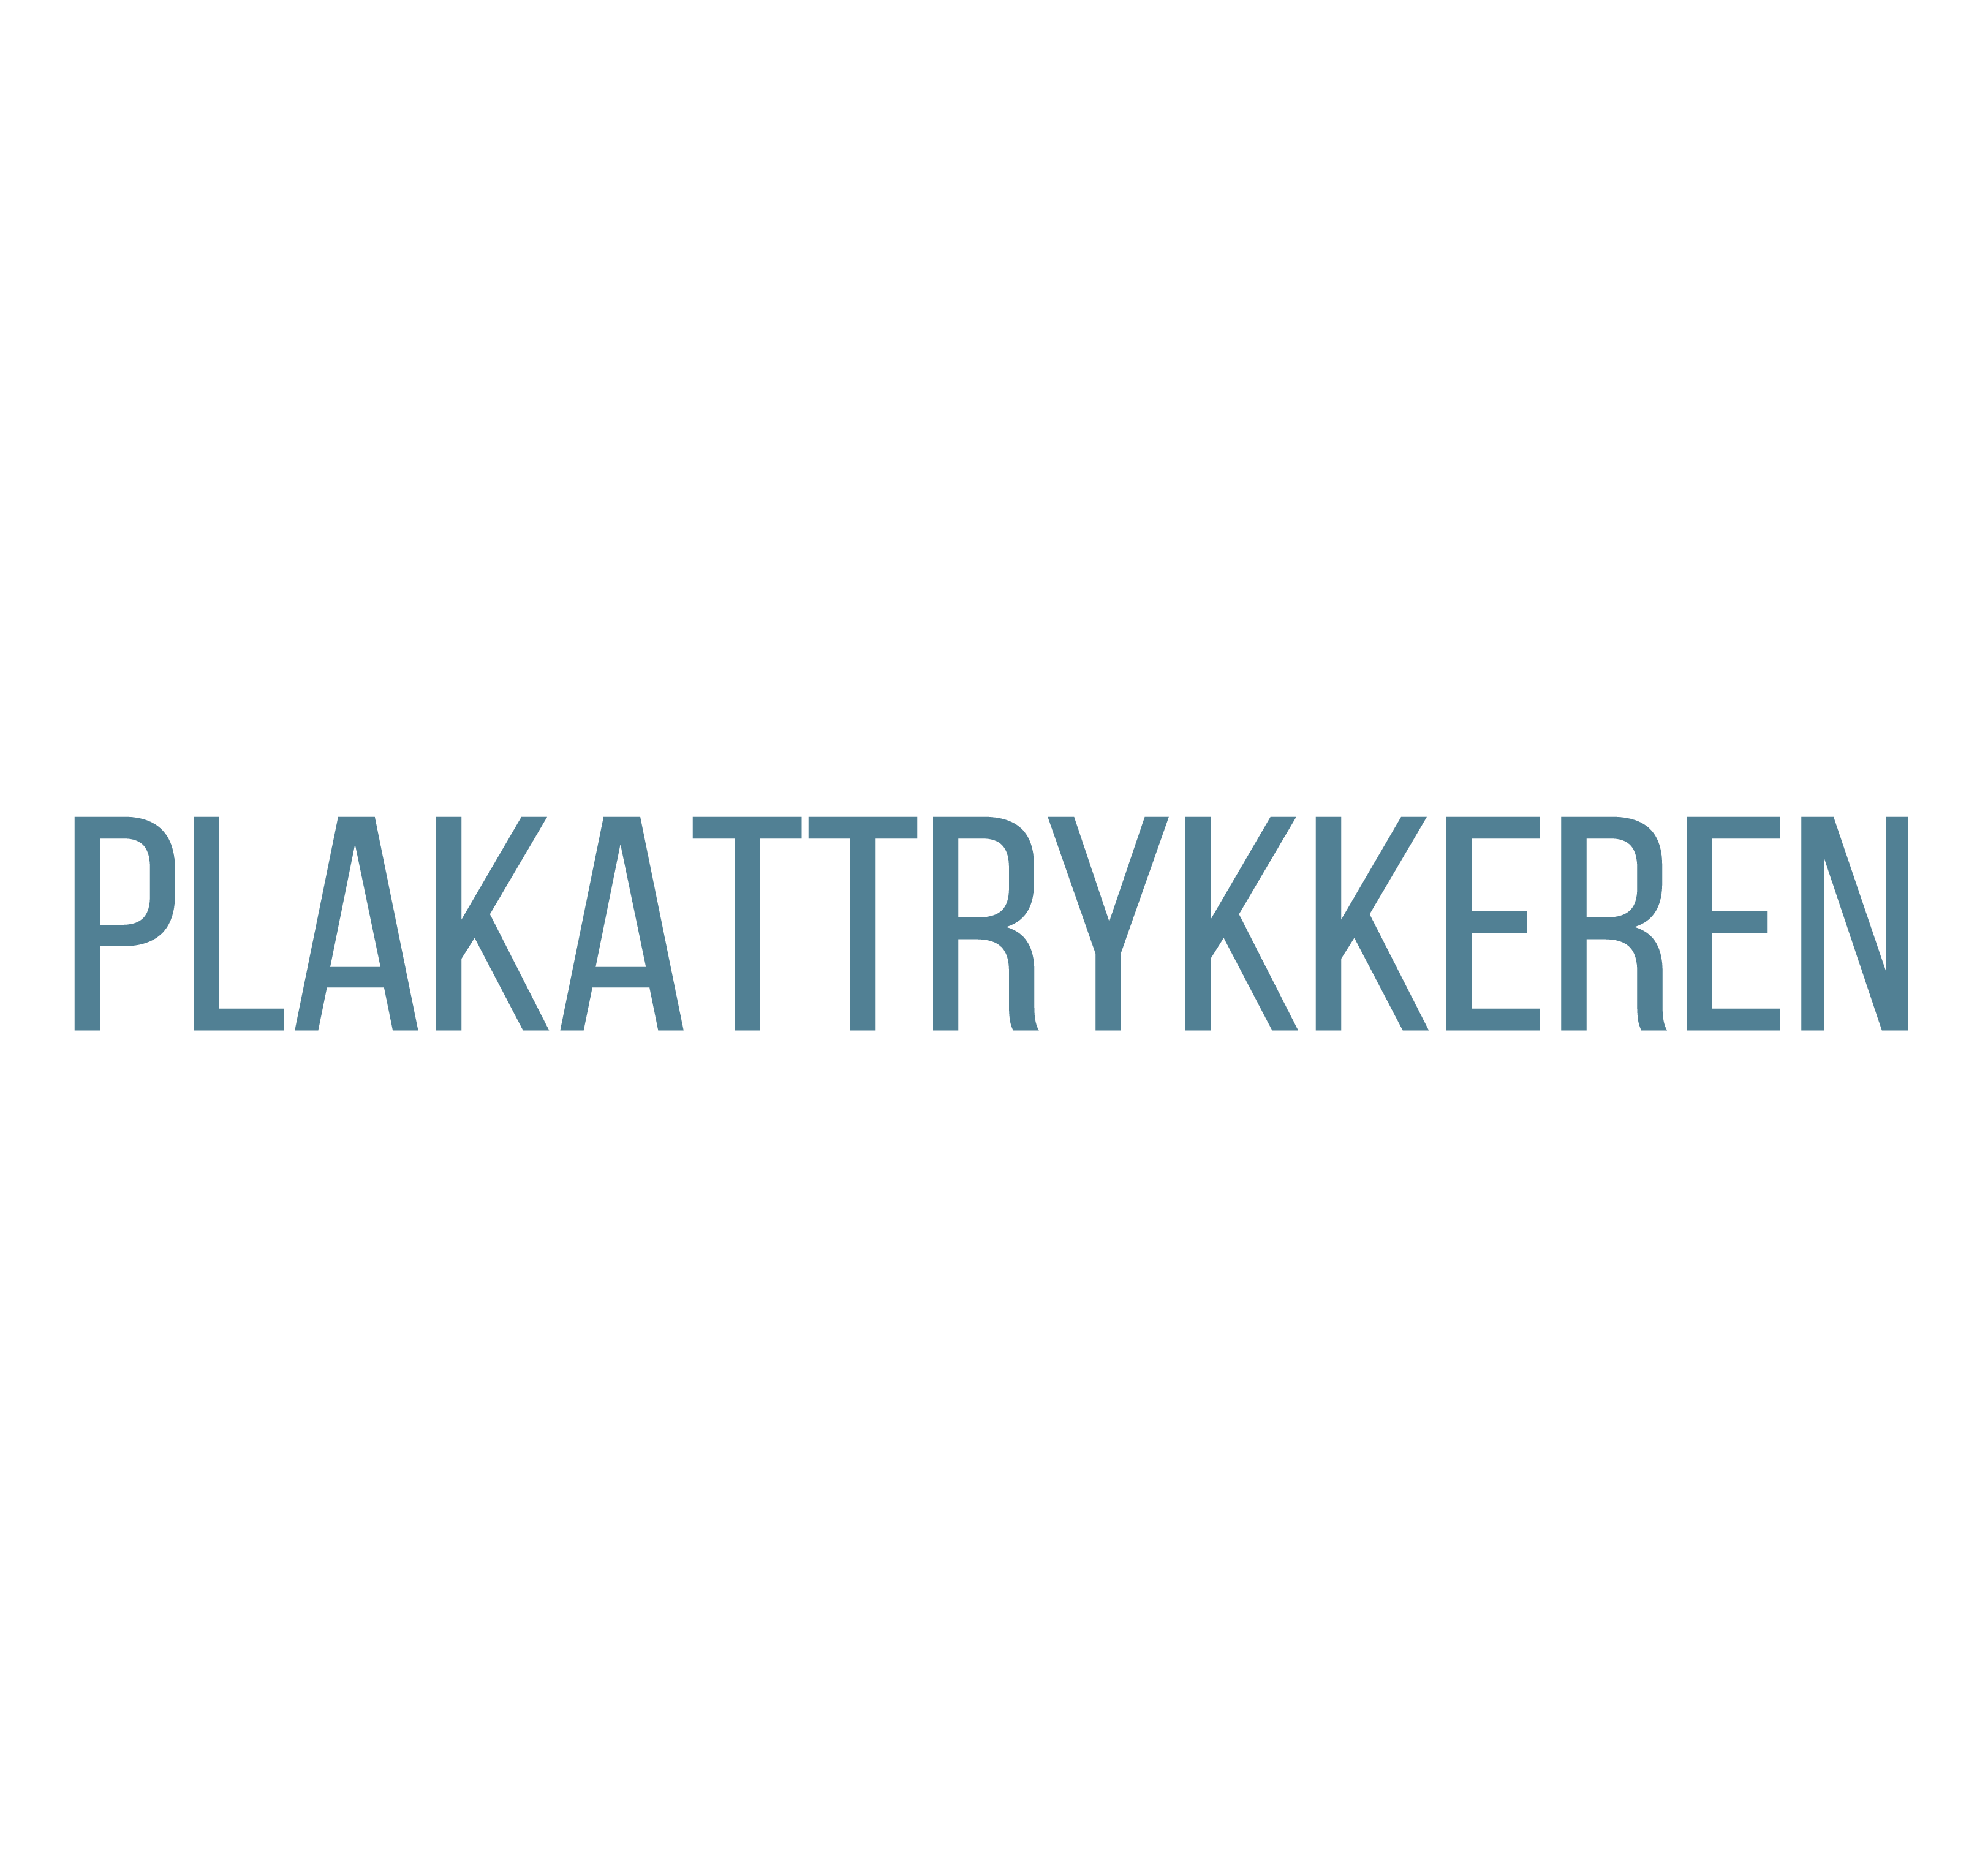 Se Test 1 kr. hos PlakatTrykkeren.dk